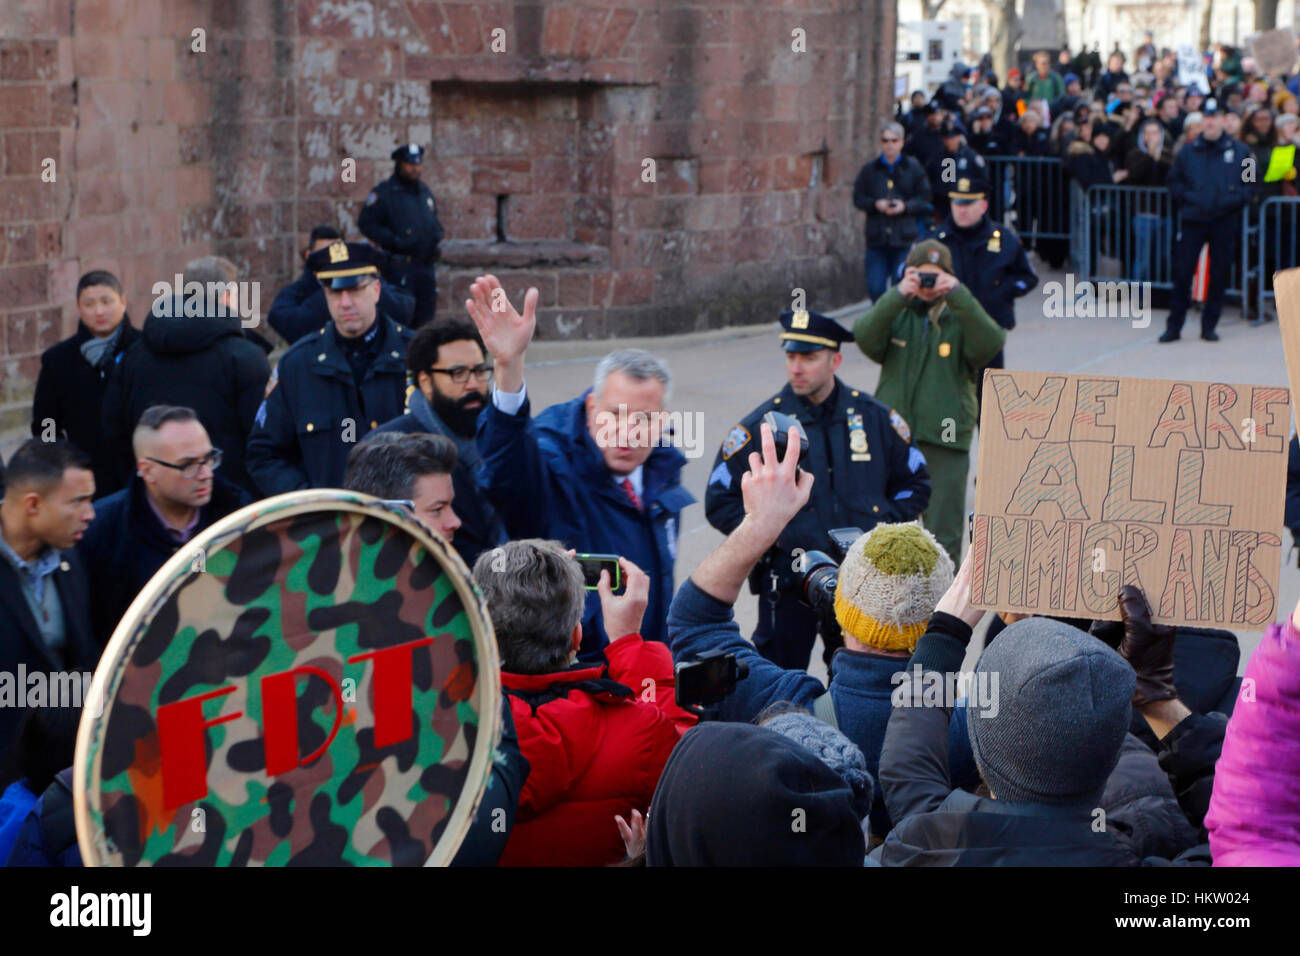 New York, USA. Januar 2017. Der Bürgermeister von New York, Bill De Blasio, winkt der Menge zu, als er sich auf den Weg macht, um das Treffen im Battery Park anzusprechen. Januar 29, 2017 Stockfoto